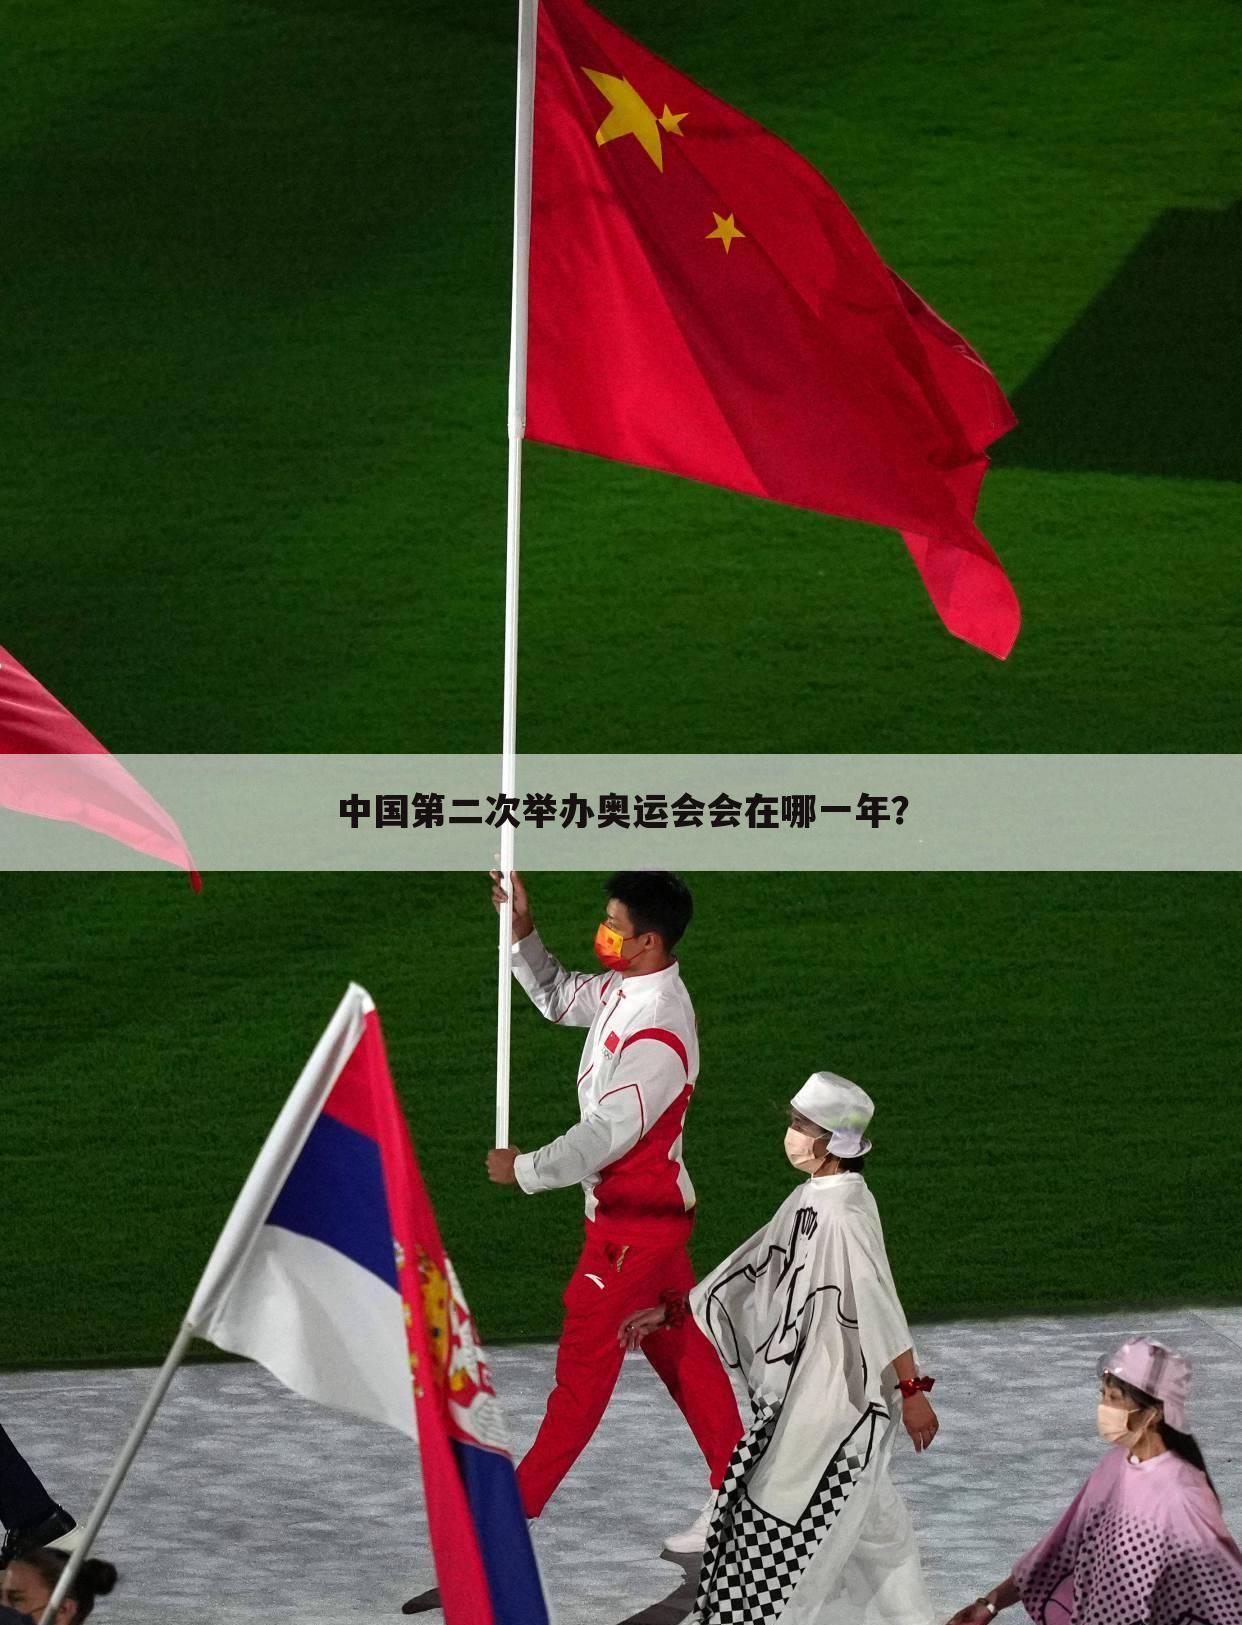 中国第二次举办奥运会会在哪一年？